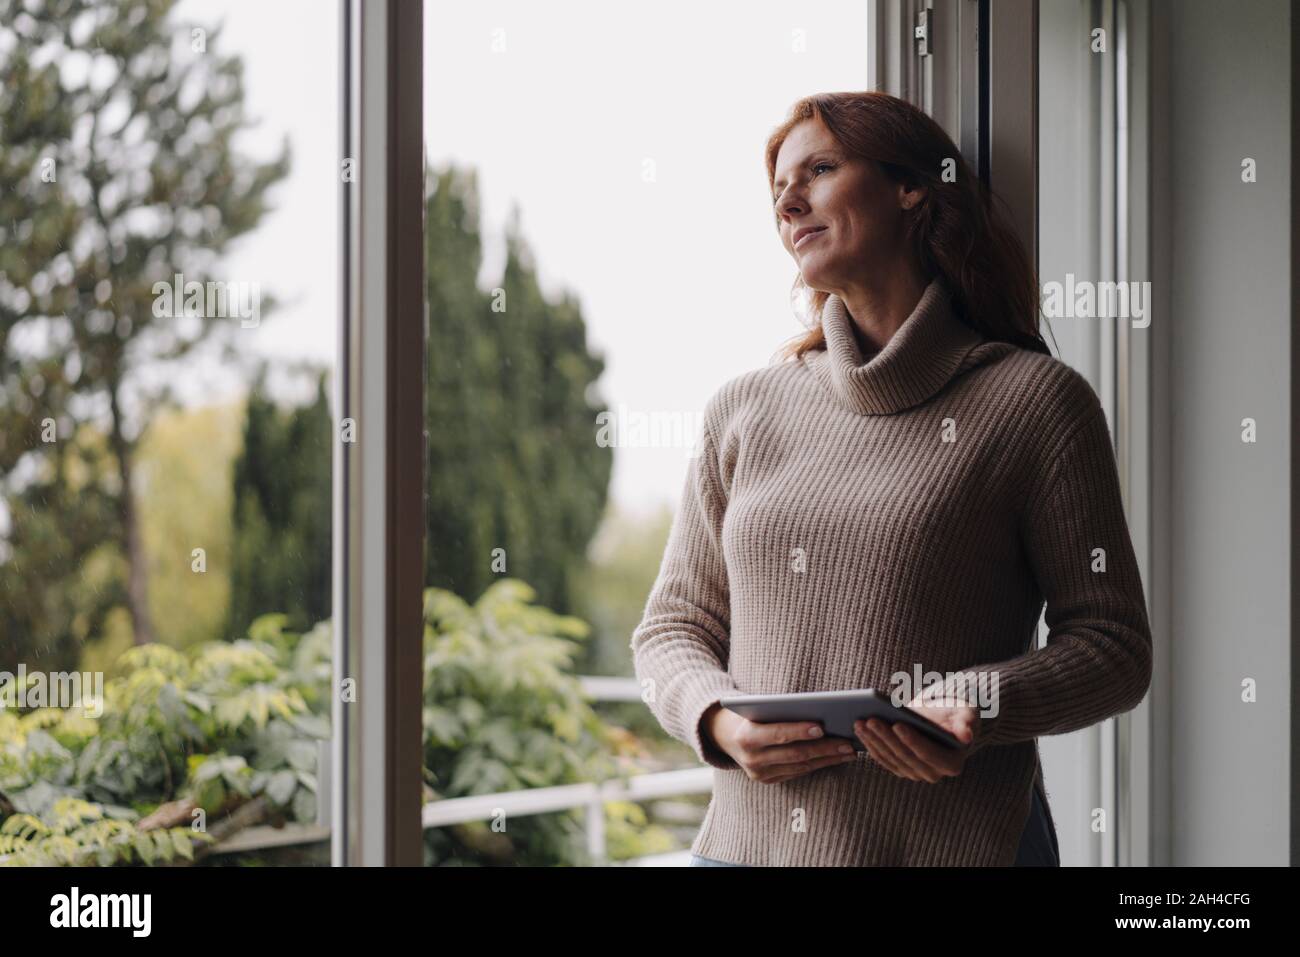 Femme à la fenêtre de sortie, holding digital tablet Banque D'Images